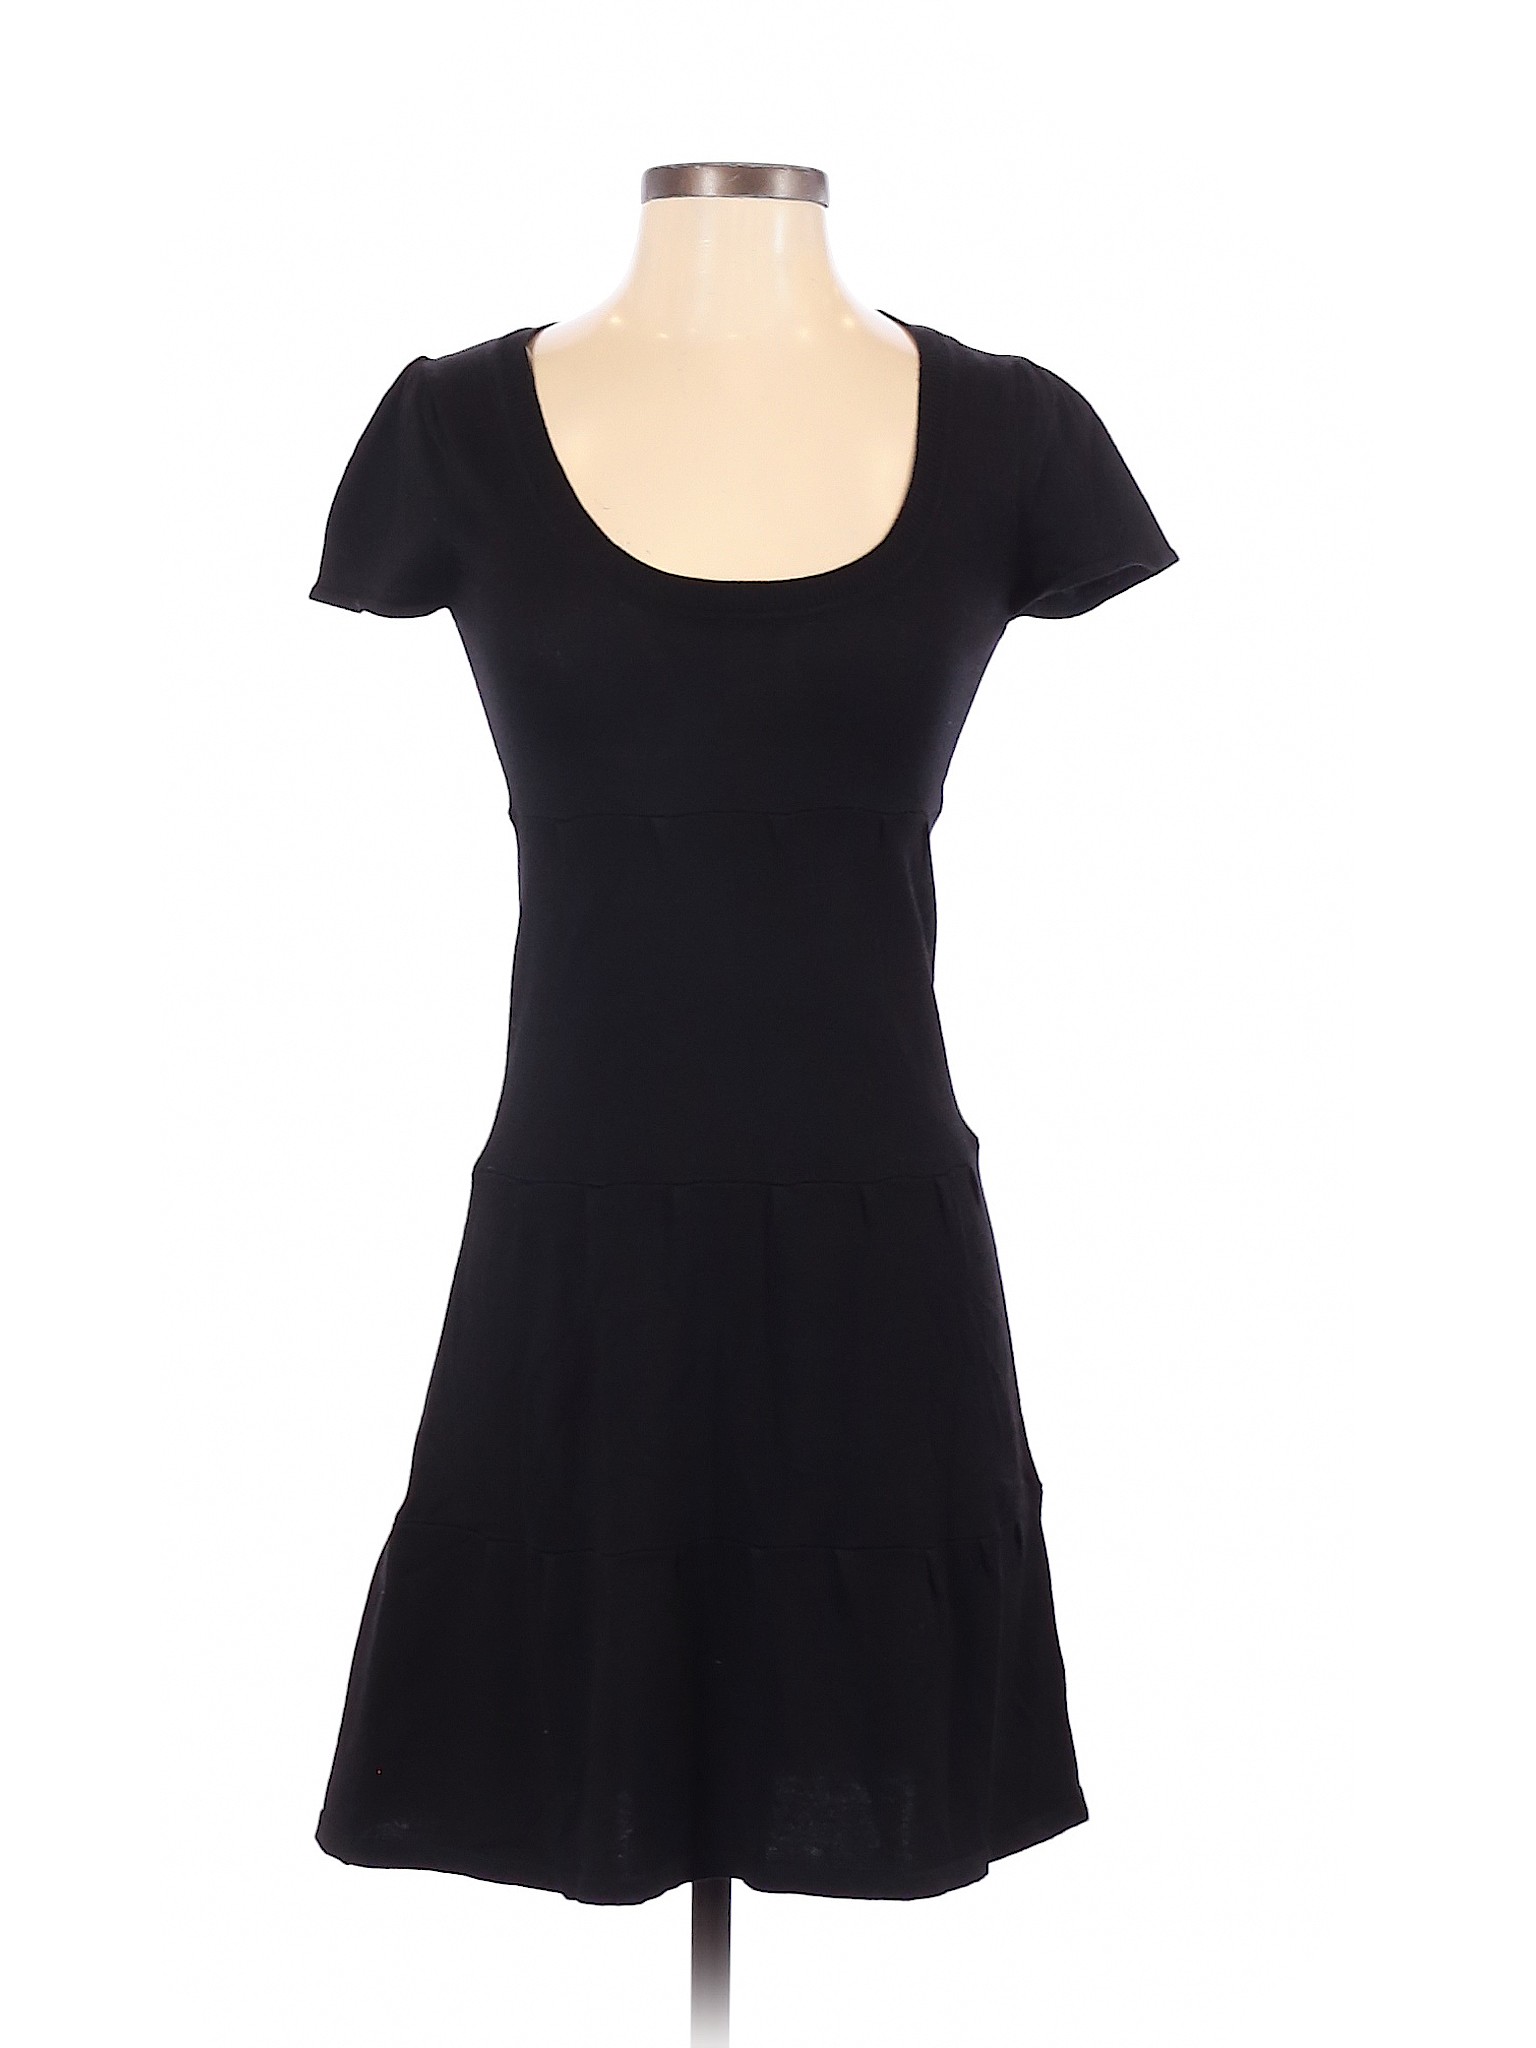 Derek Heart Women Black Casual Dress S | eBay